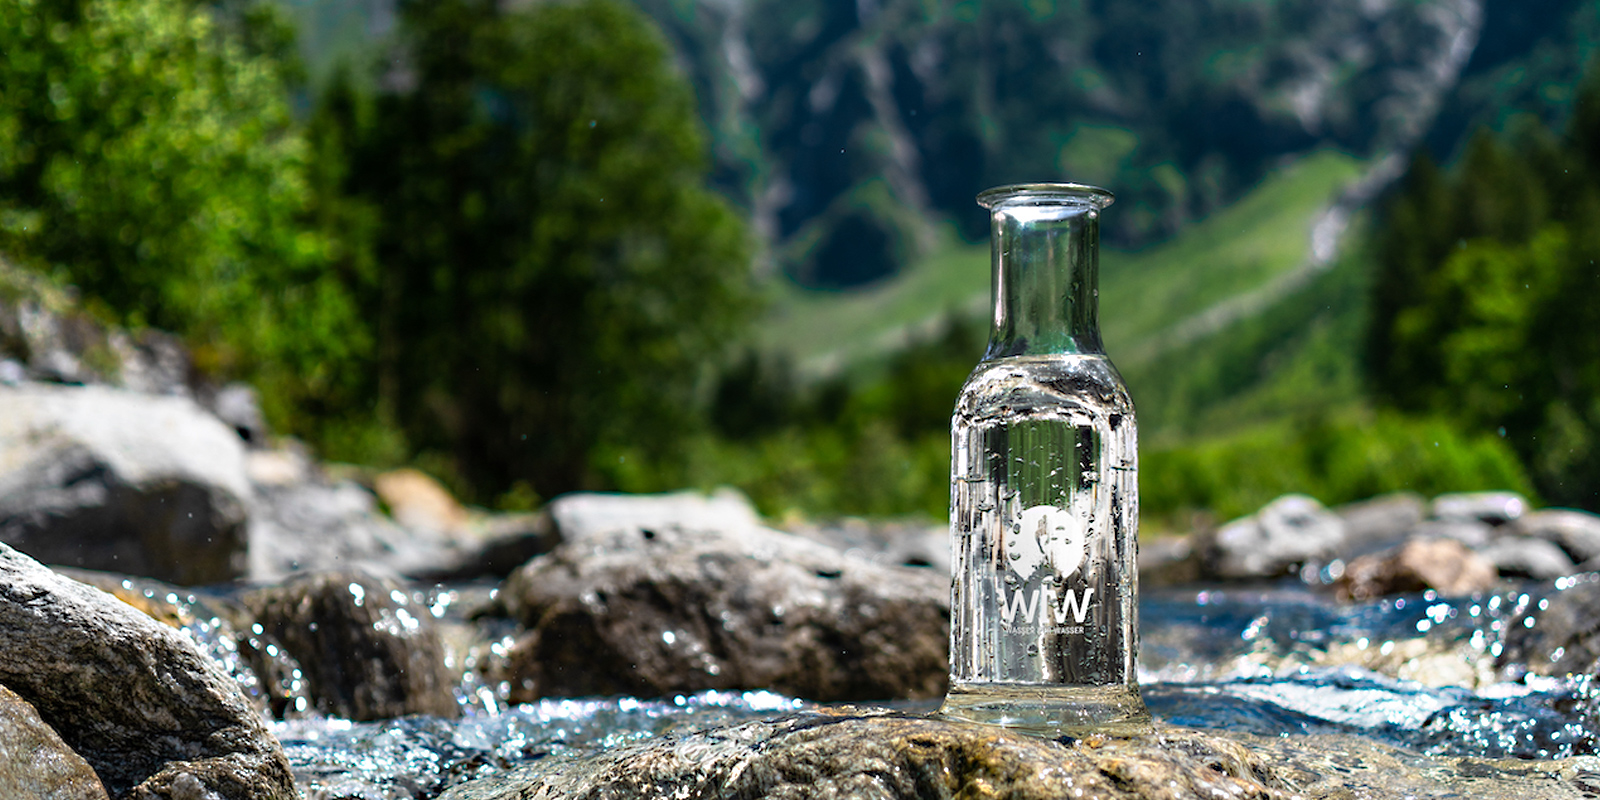 Glasflasche auf einem Stein in einem Fluss